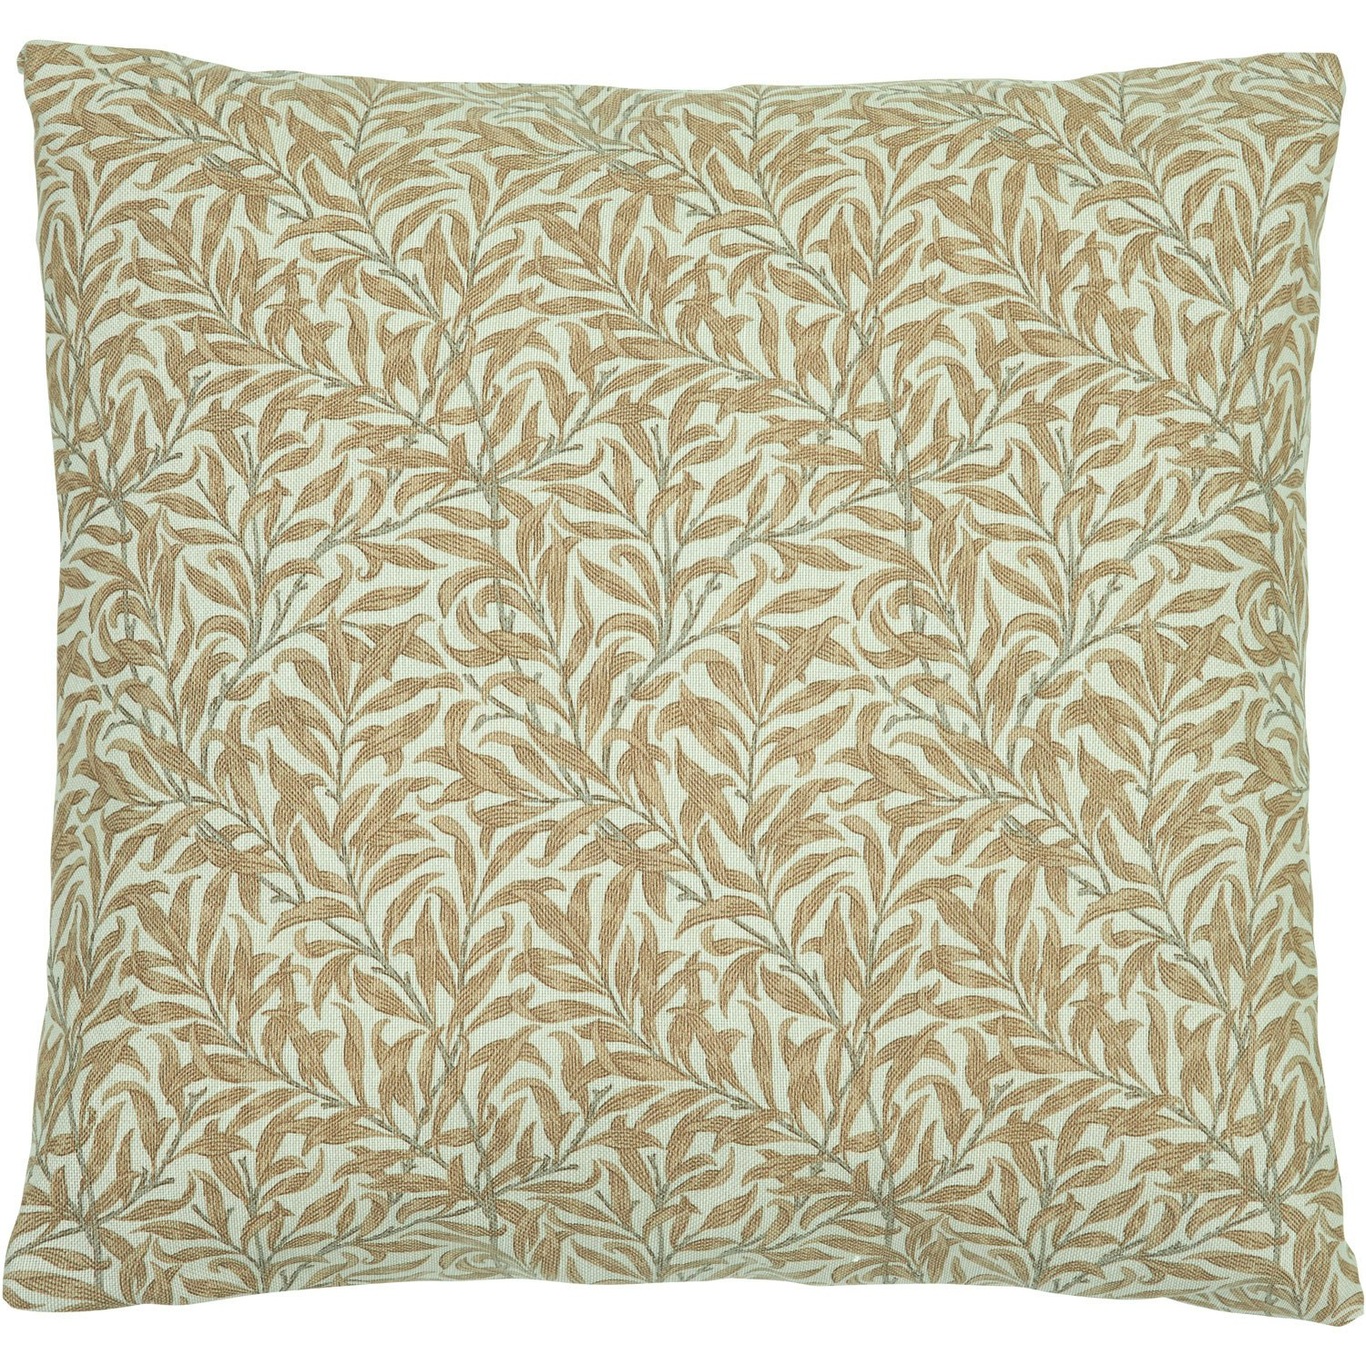 Ramas Cushion Cover 50x50 cm, Brown/Greige